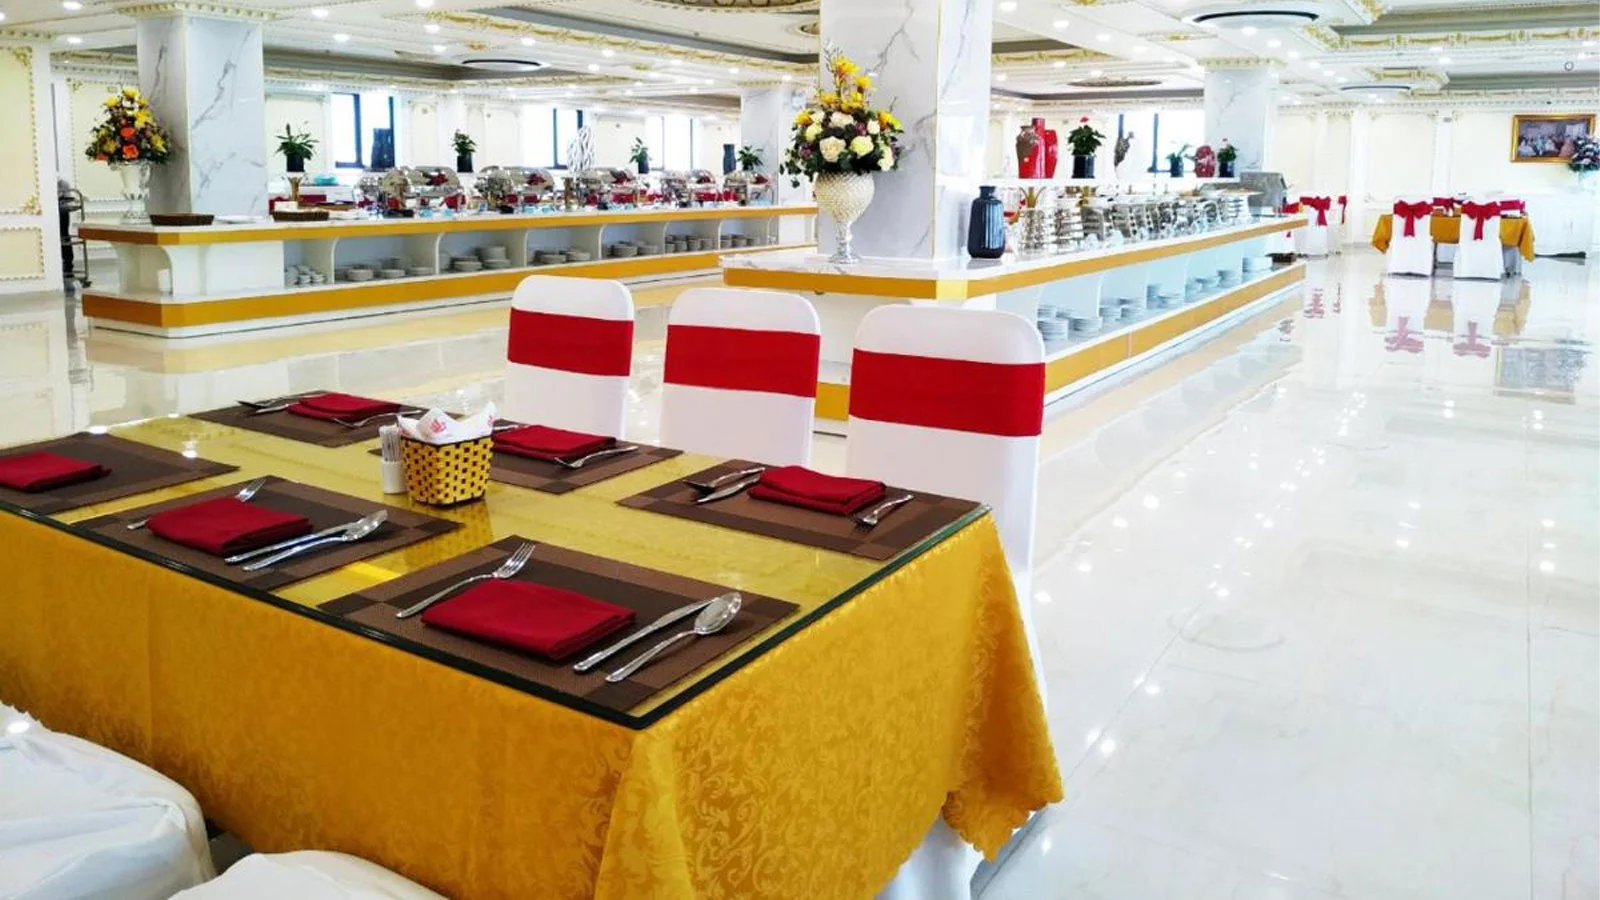 Khách sạn Phượng Hoàng 3 Hotel Thanh Hóa